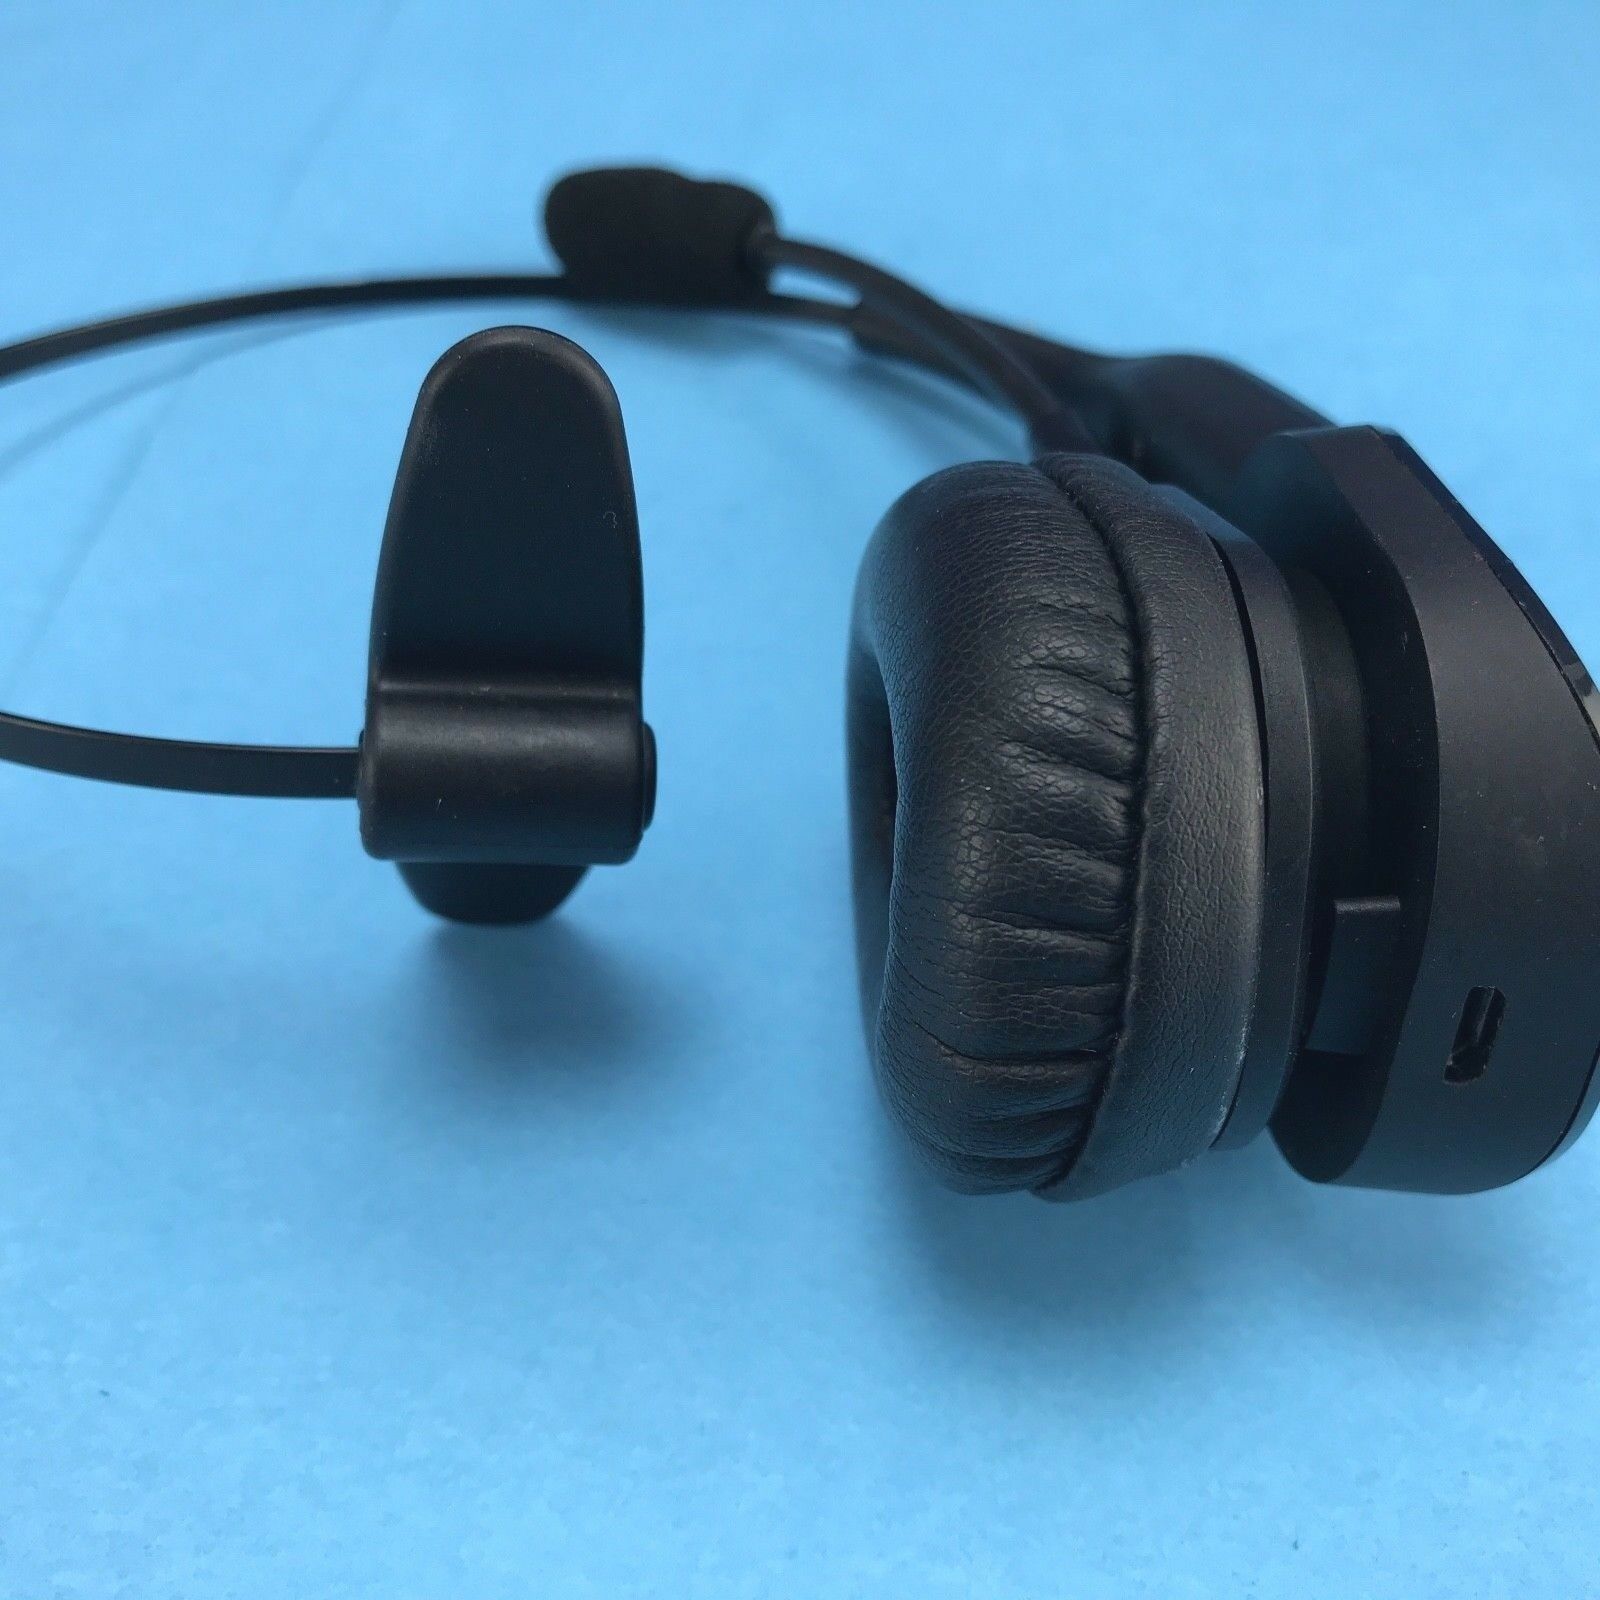 blue parrot headset b350xt pairing